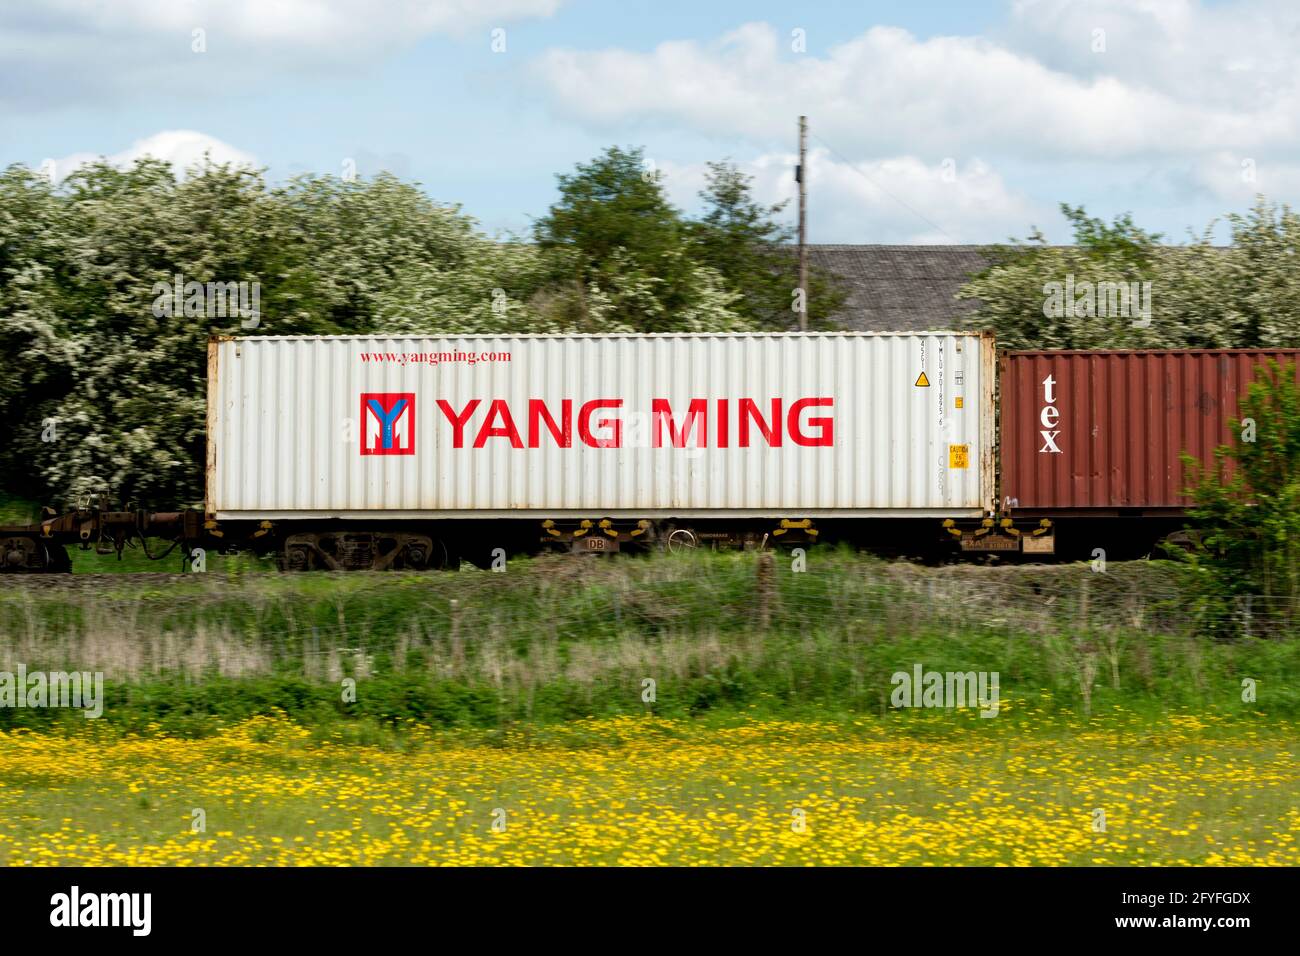 Un contenitore di spedizione Yang Ming su un treno freightliner, Northamptonshire, Regno Unito Foto Stock